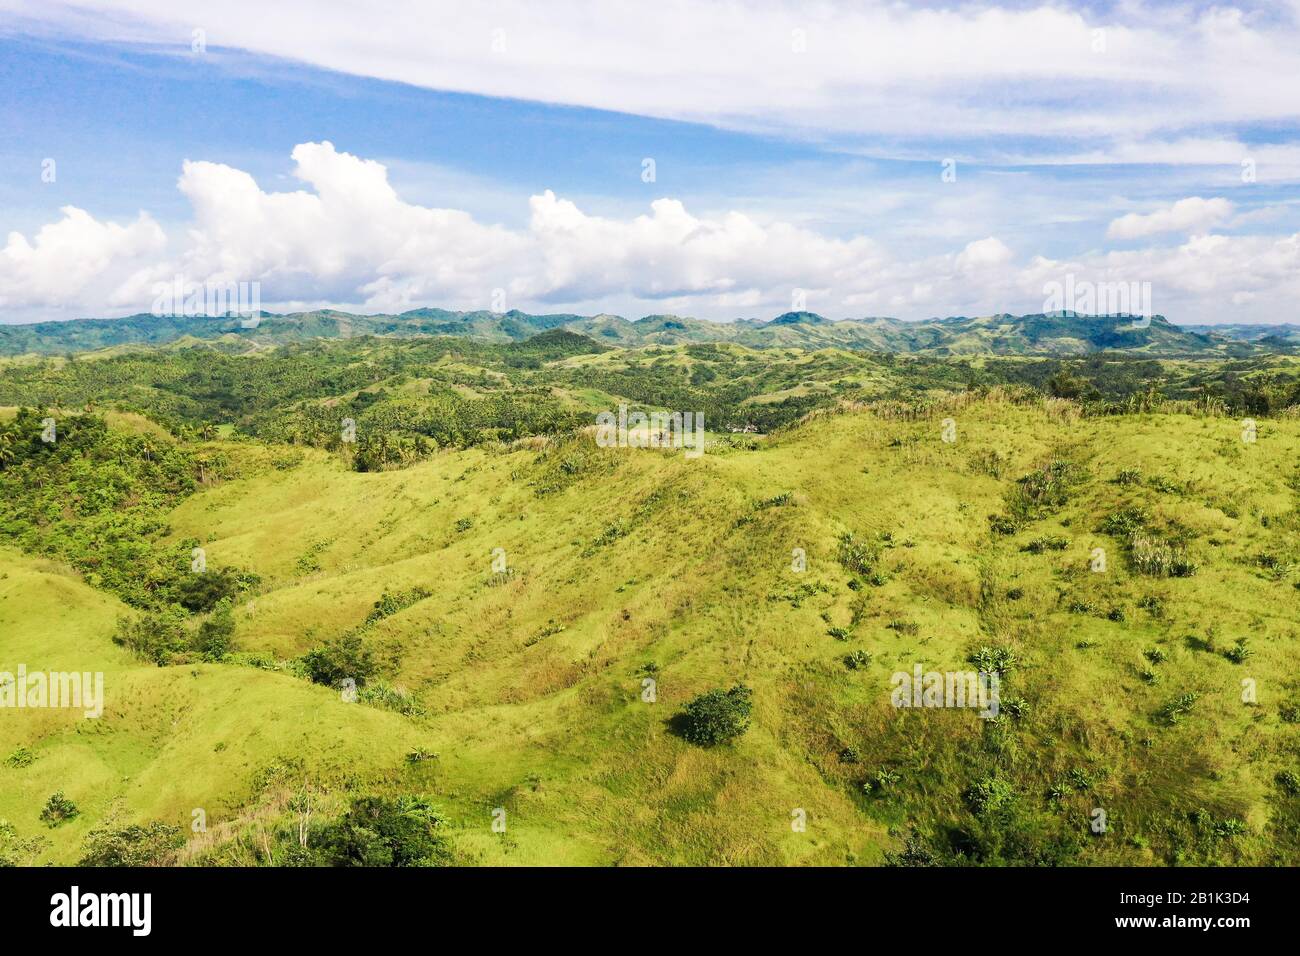 La nature des îles Philippines, Samar. Montagnes et collines par temps clair. Paysage tropical avec collines verdoyantes, vue aérienne. Banque D'Images